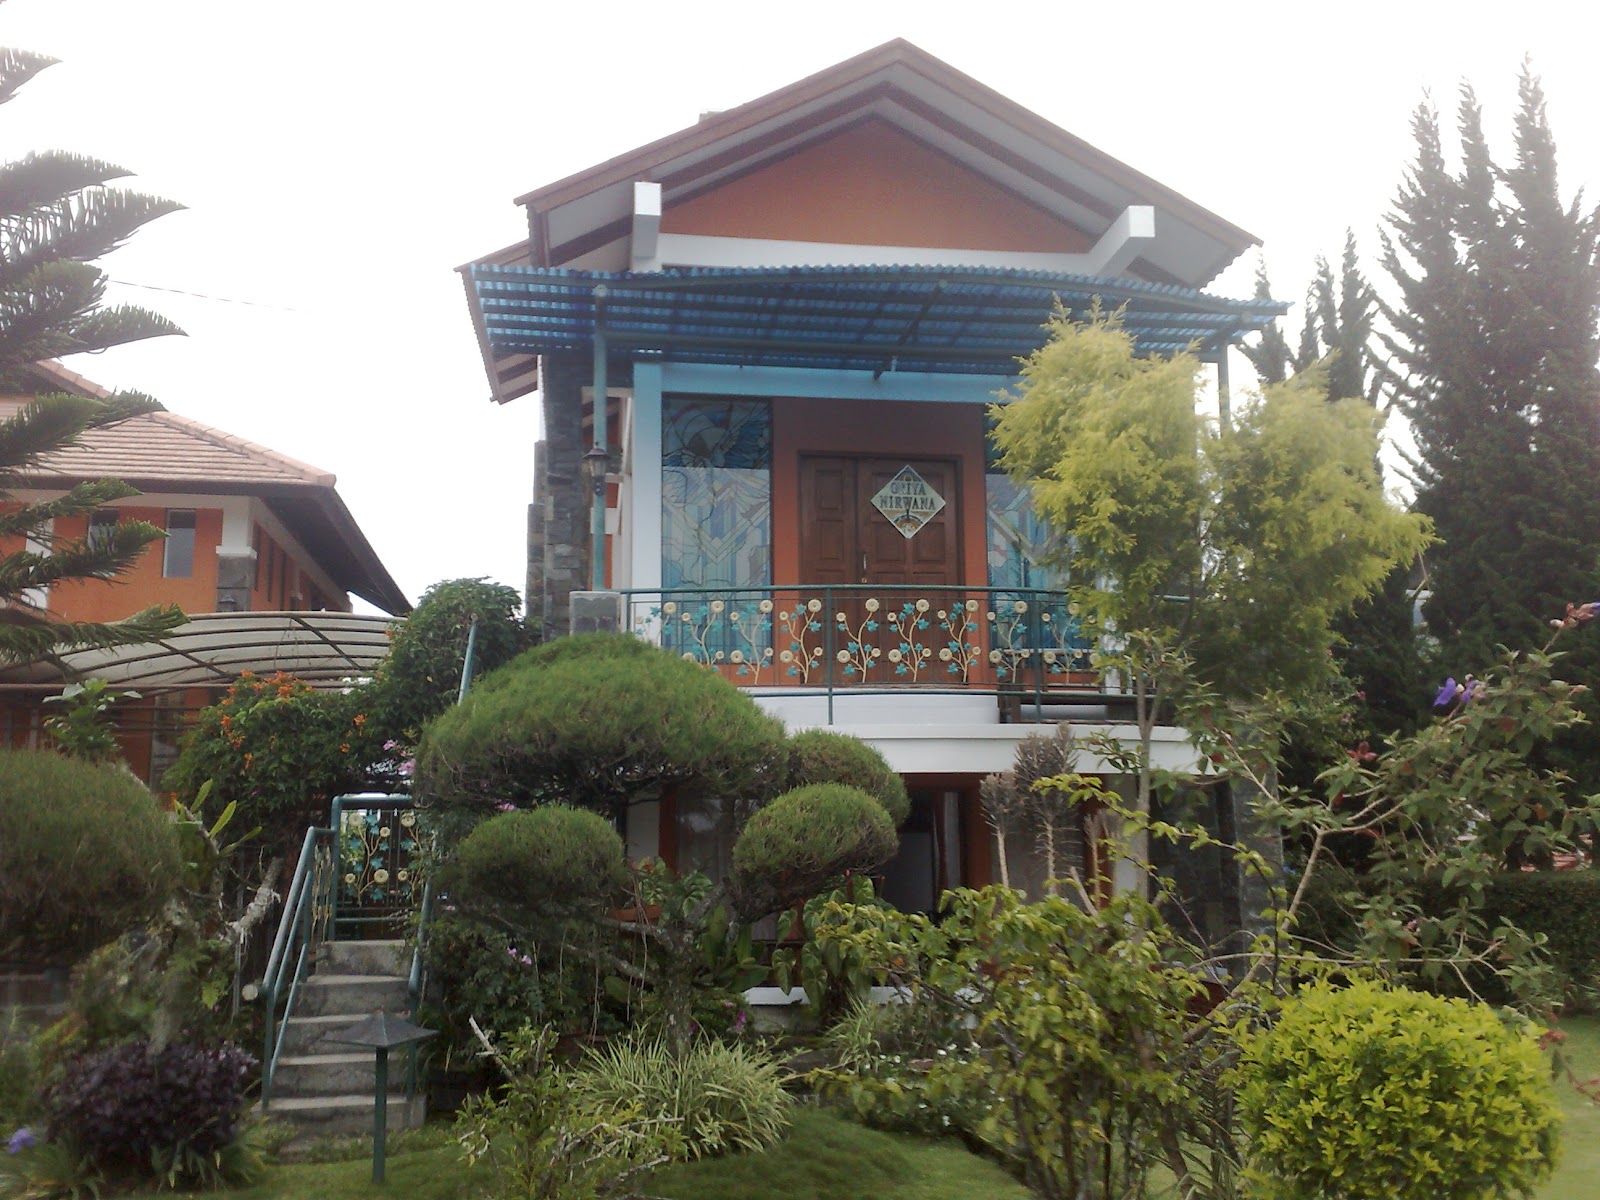   spesifikasi villa istana bunga 4 kamar nirwana lembang bandung
4 kamar 